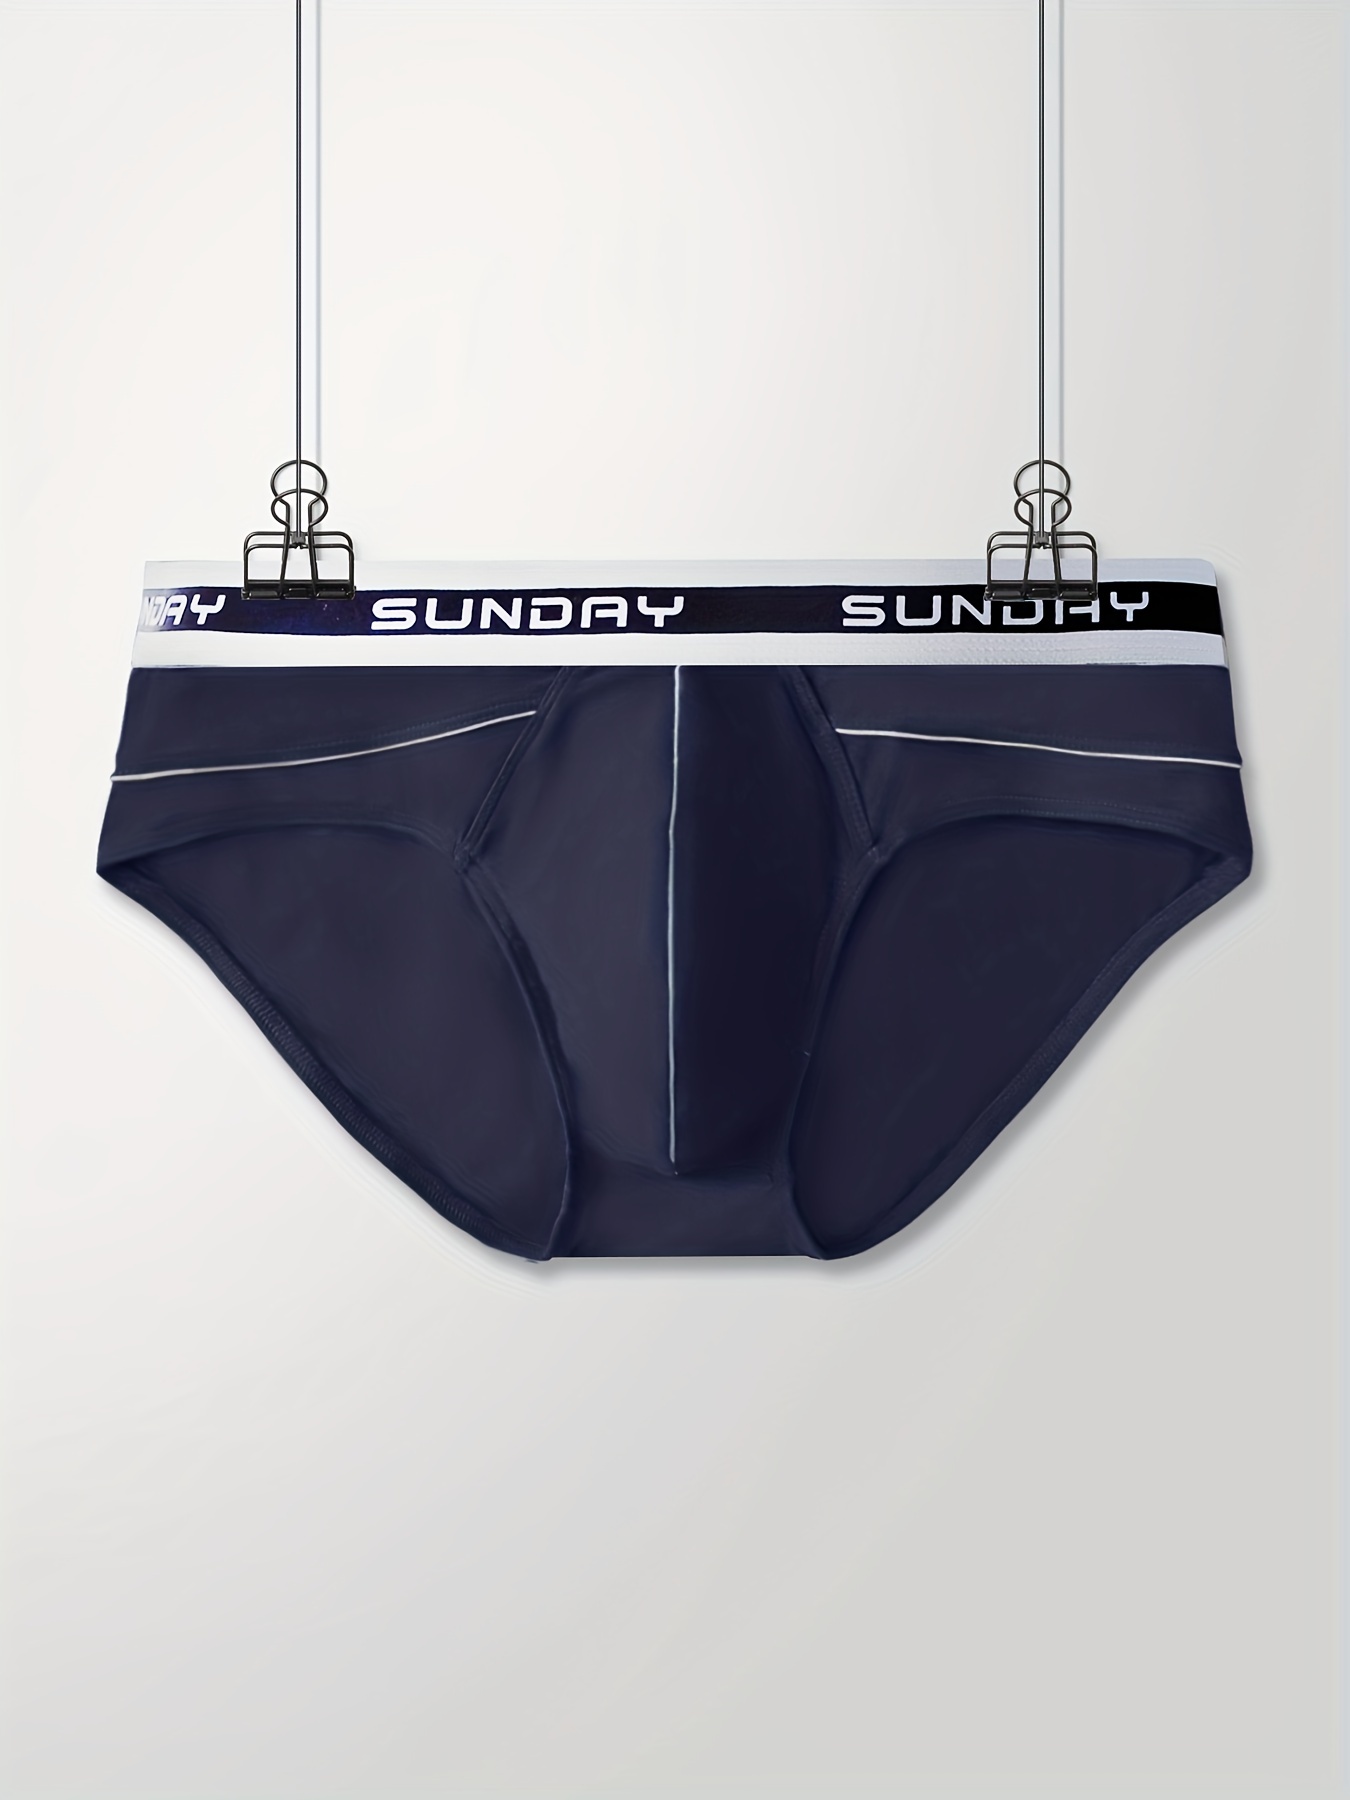 Men's Skin friendly Underwear Sexy Jockstrap Low Waist Front